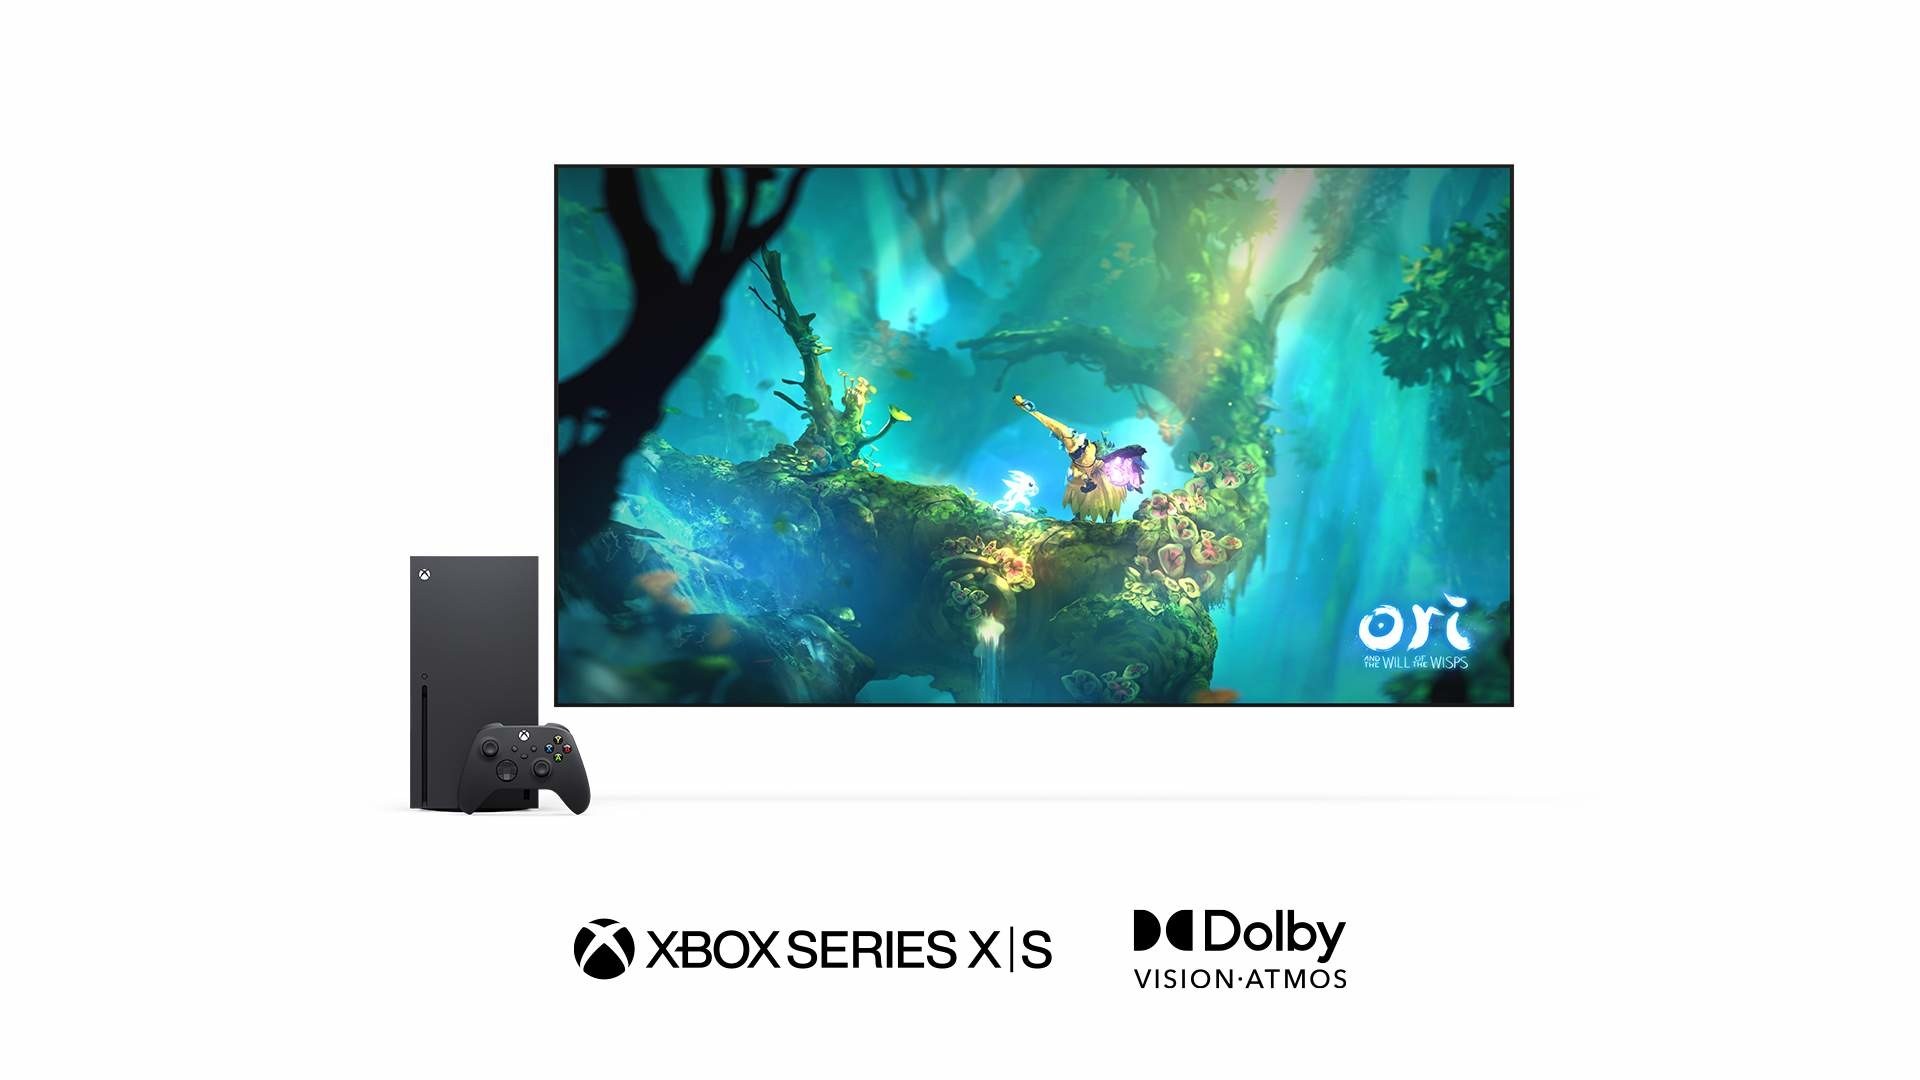 Xbox Series X|S 正式開放杜比視界遊戲功能 提供更生動鮮明的顯示品質